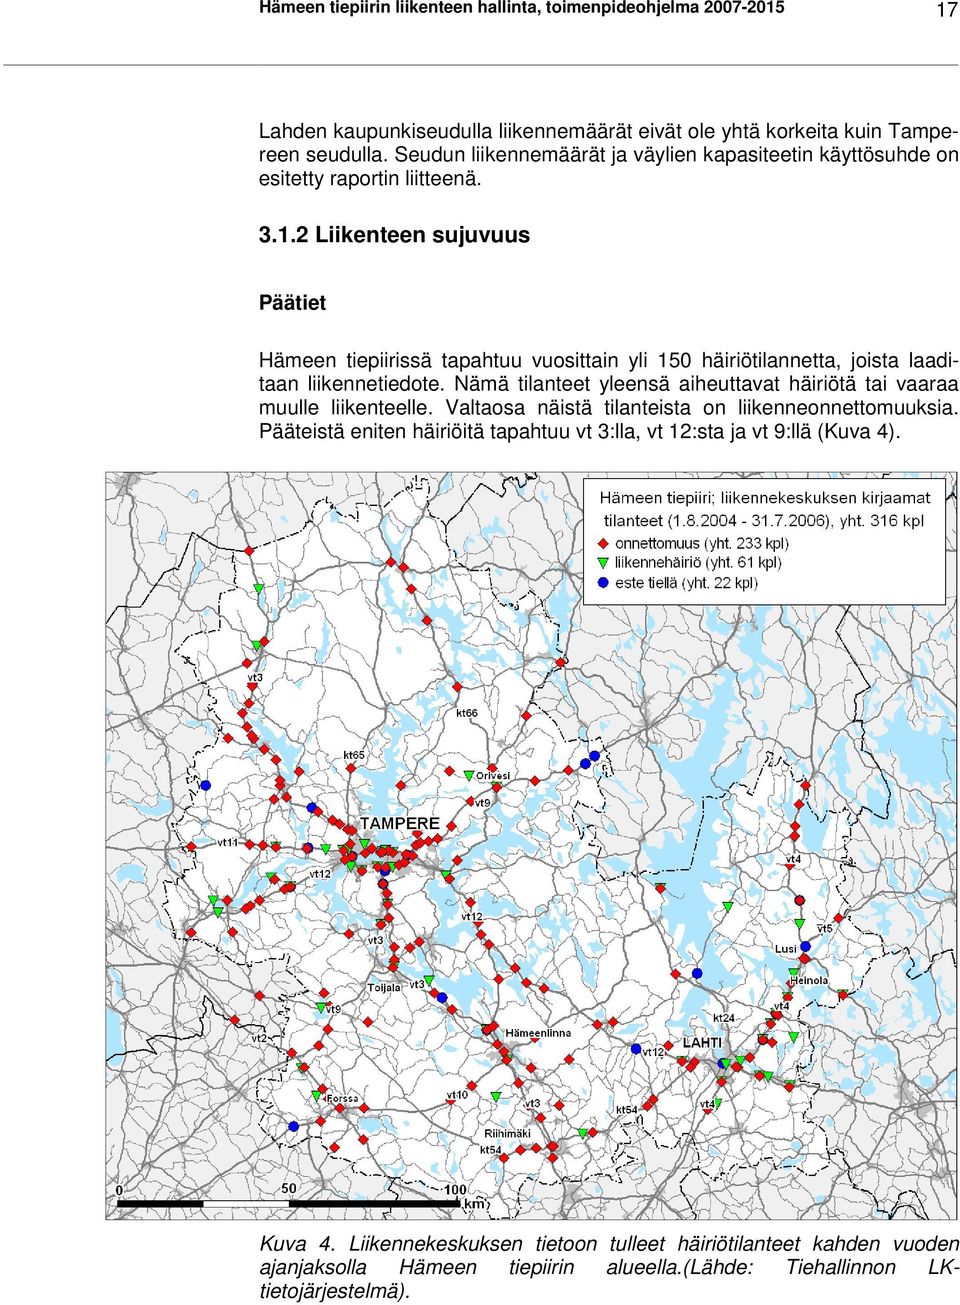 2 Liikenteen sujuvuus Päätiet Hämeen tiepiirissä tapahtuu vuosittain yli 150 häiriötilannetta, joista laaditaan liikennetiedote.